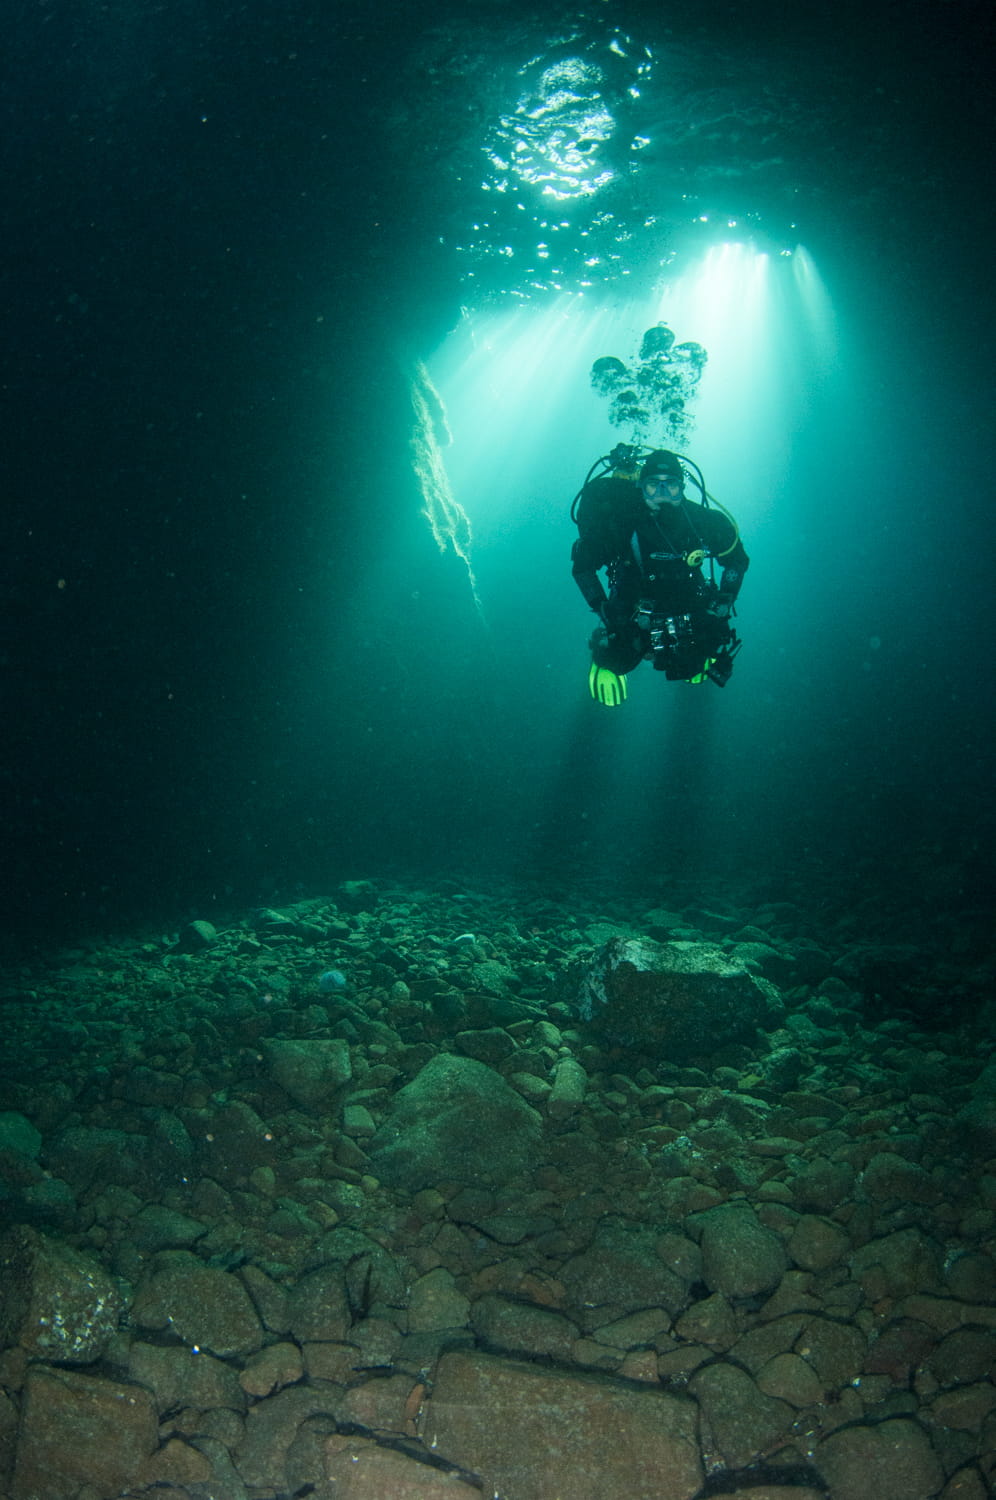 A diver exploring a sea cave